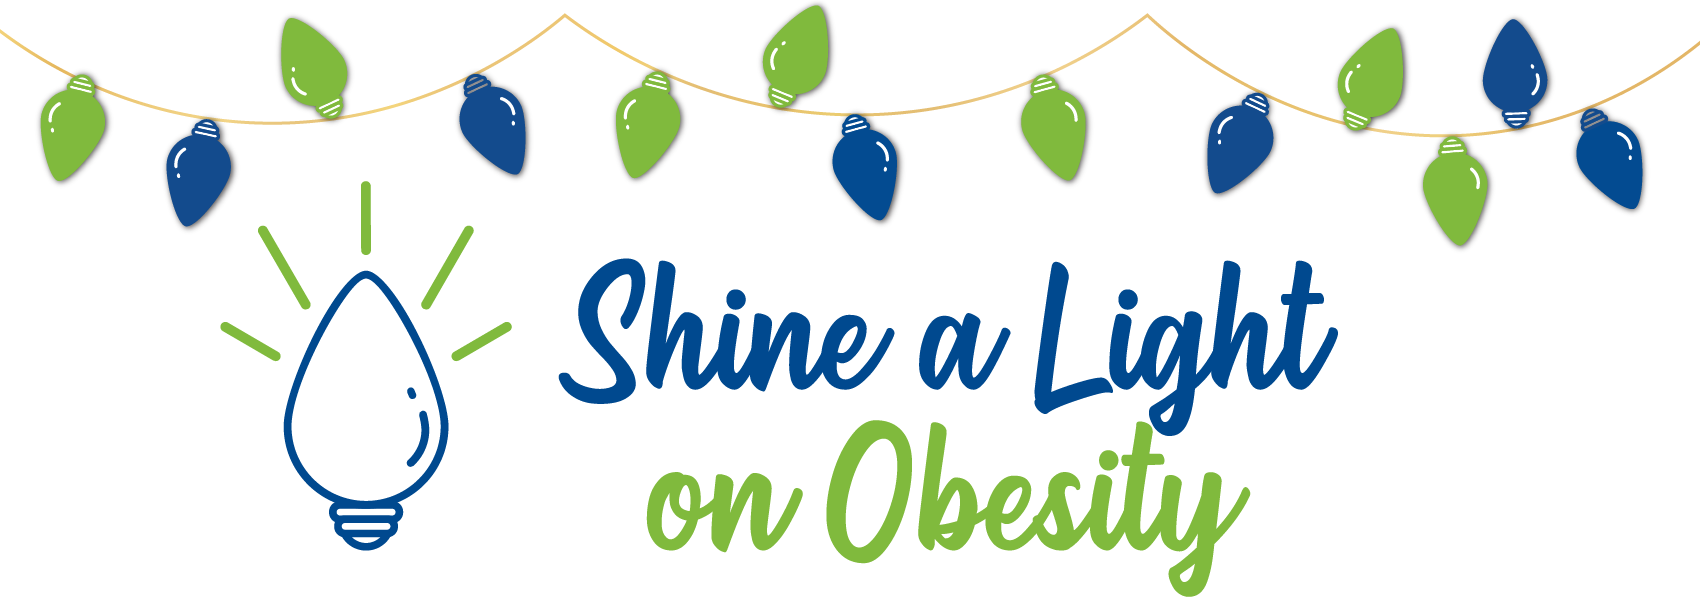 Shine a Light on Obesity logo